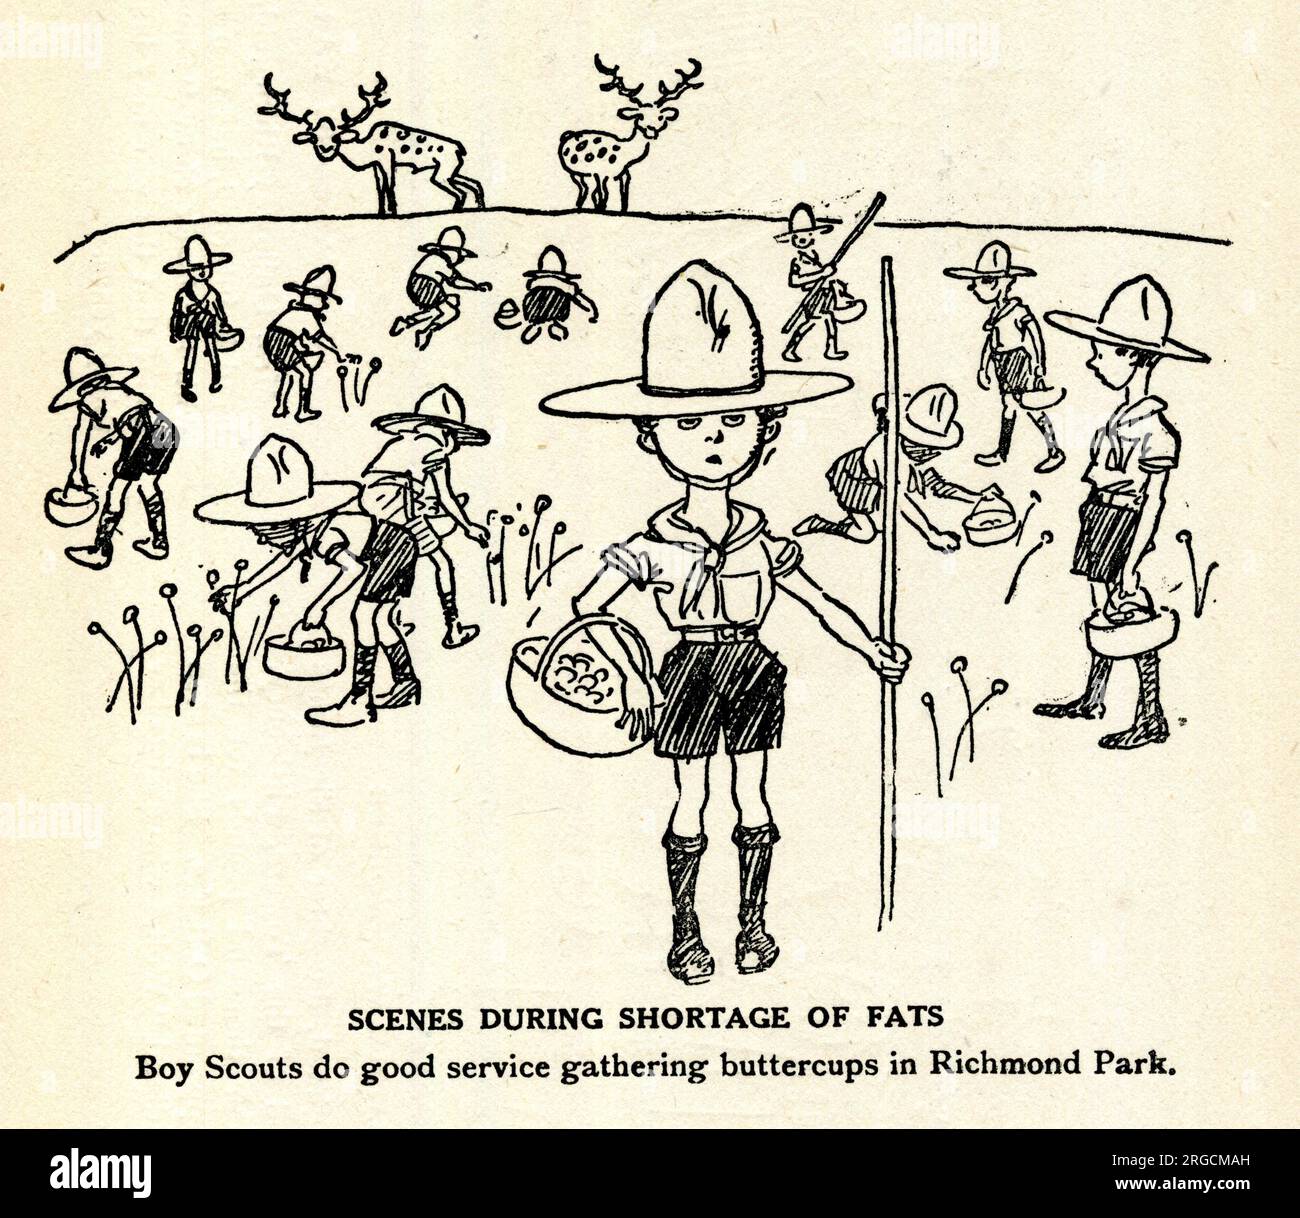 Caricature, scènes durant la pénurie de gras, les scouts font un bon service pour rassembler des tasses de beurre dans le parc Richmond Banque D'Images